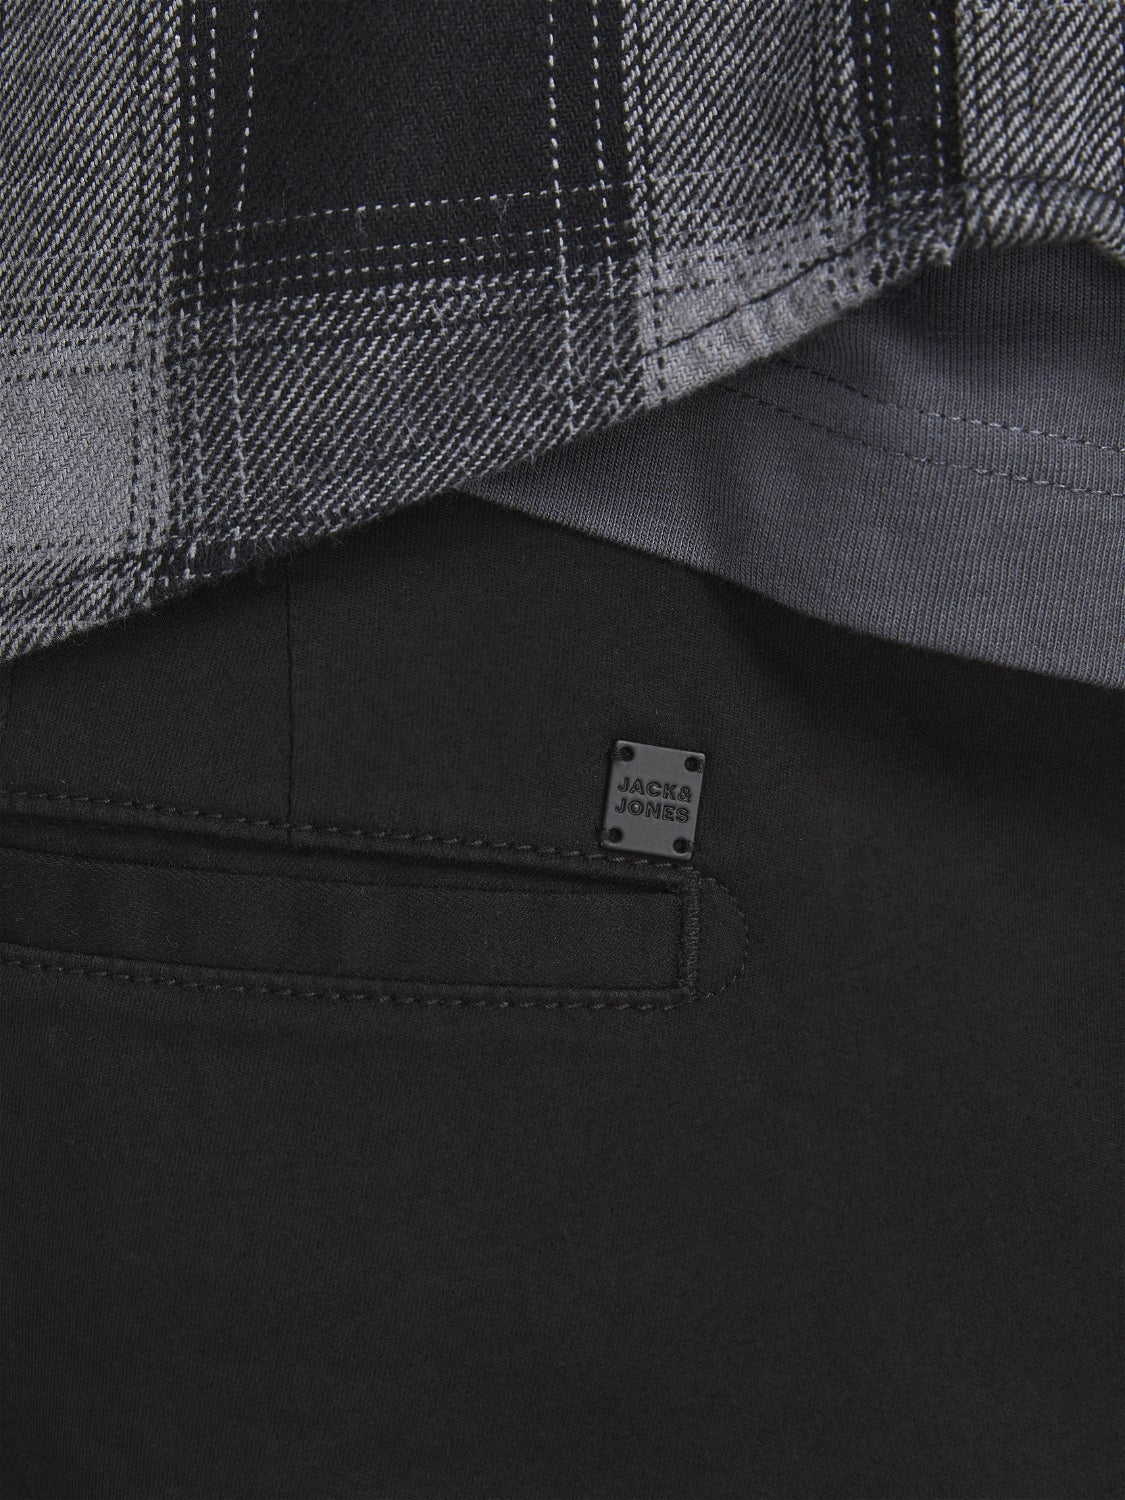 Jack & Jones Black Slim Fit Cargo Trousers | New Look